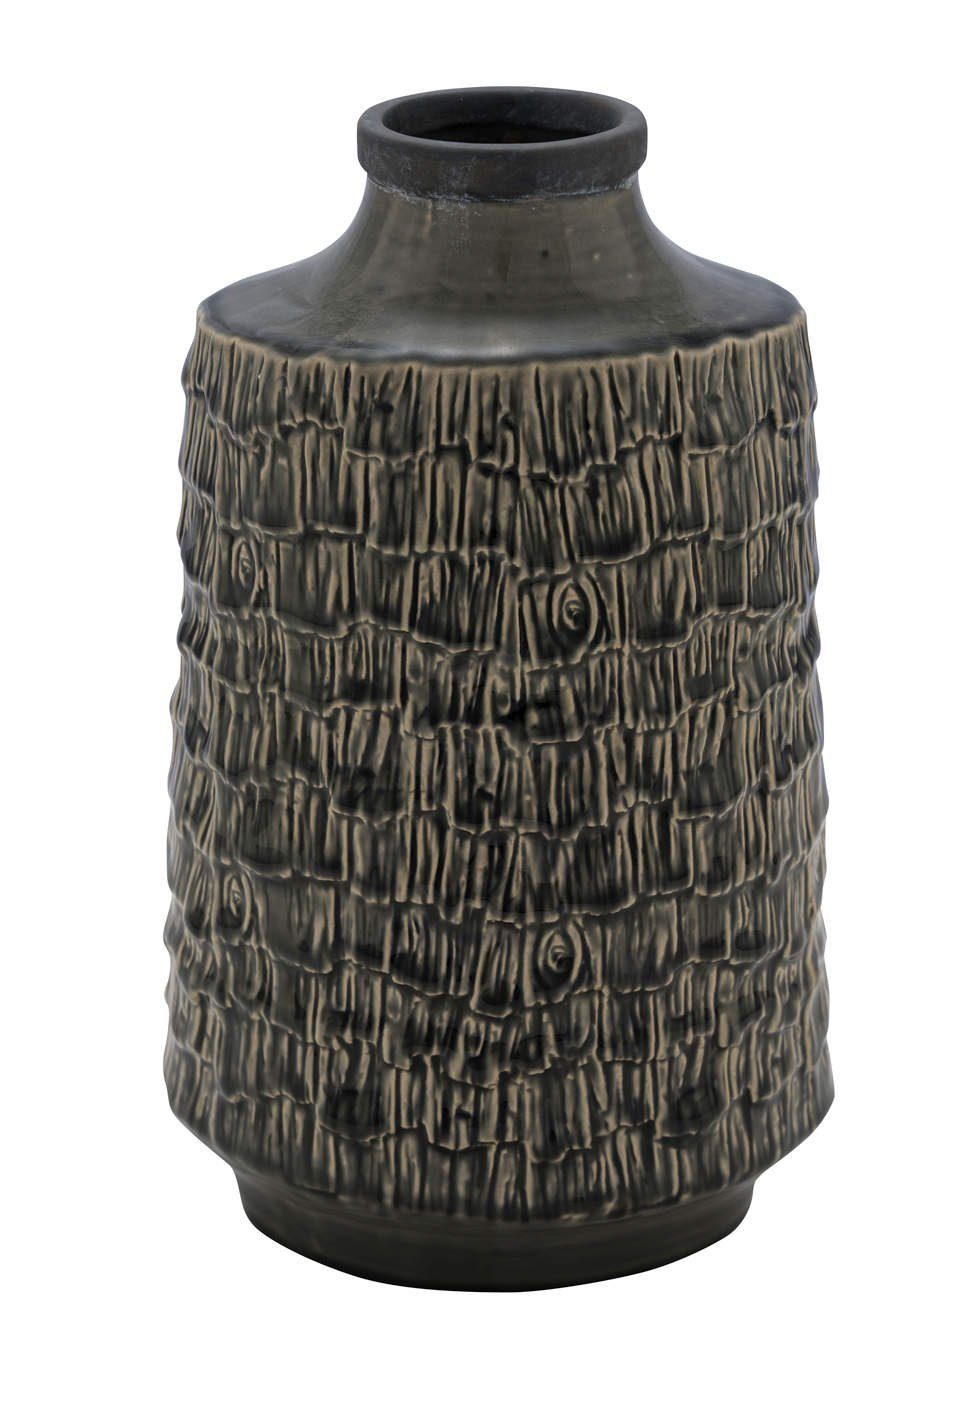 Gehlmann Dekovase Keramikvase, grau, gemustert